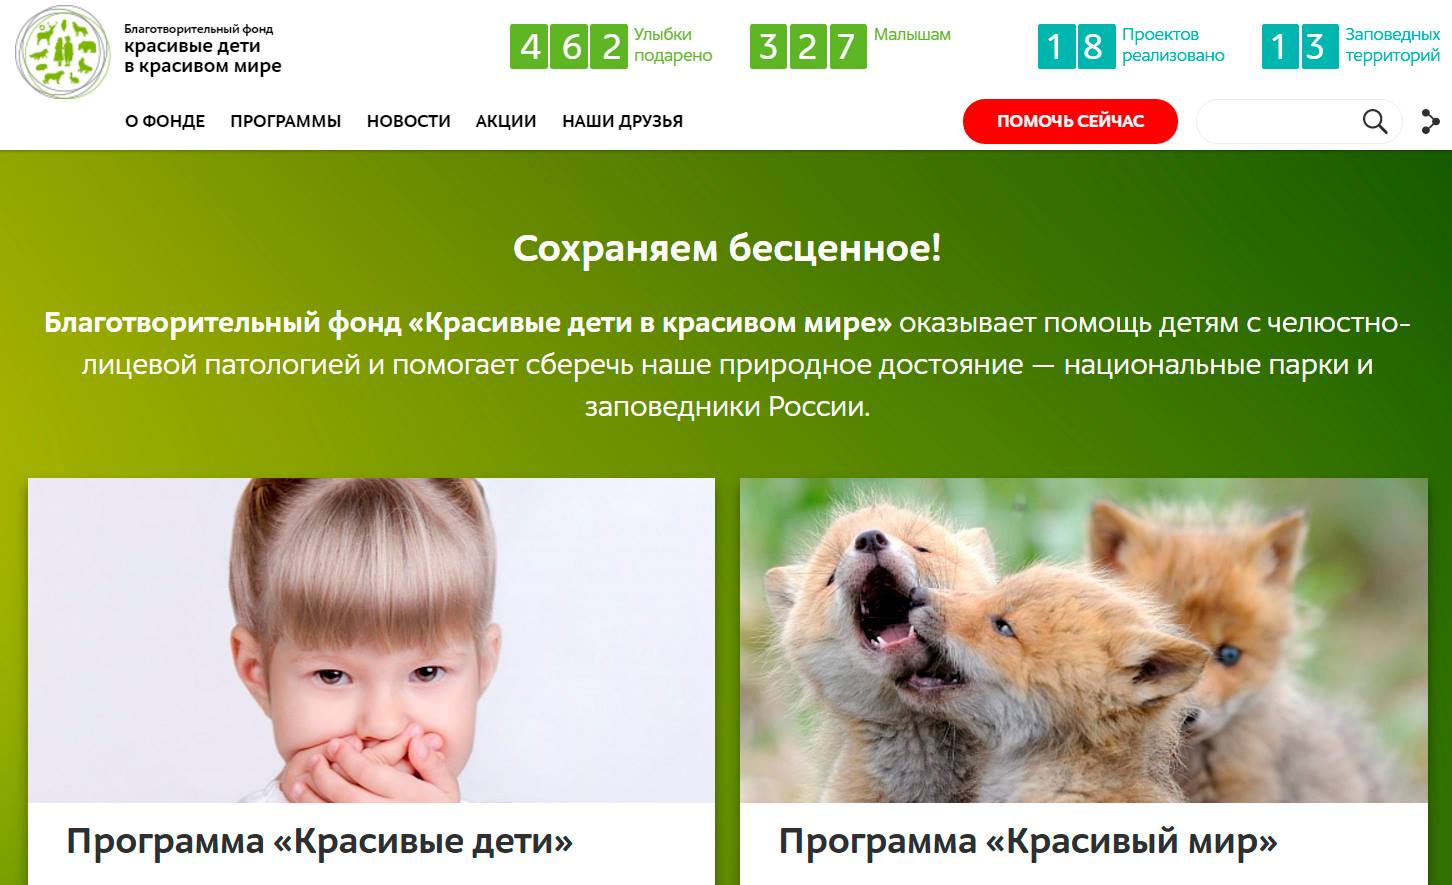 Благотворительная организация российской федерации